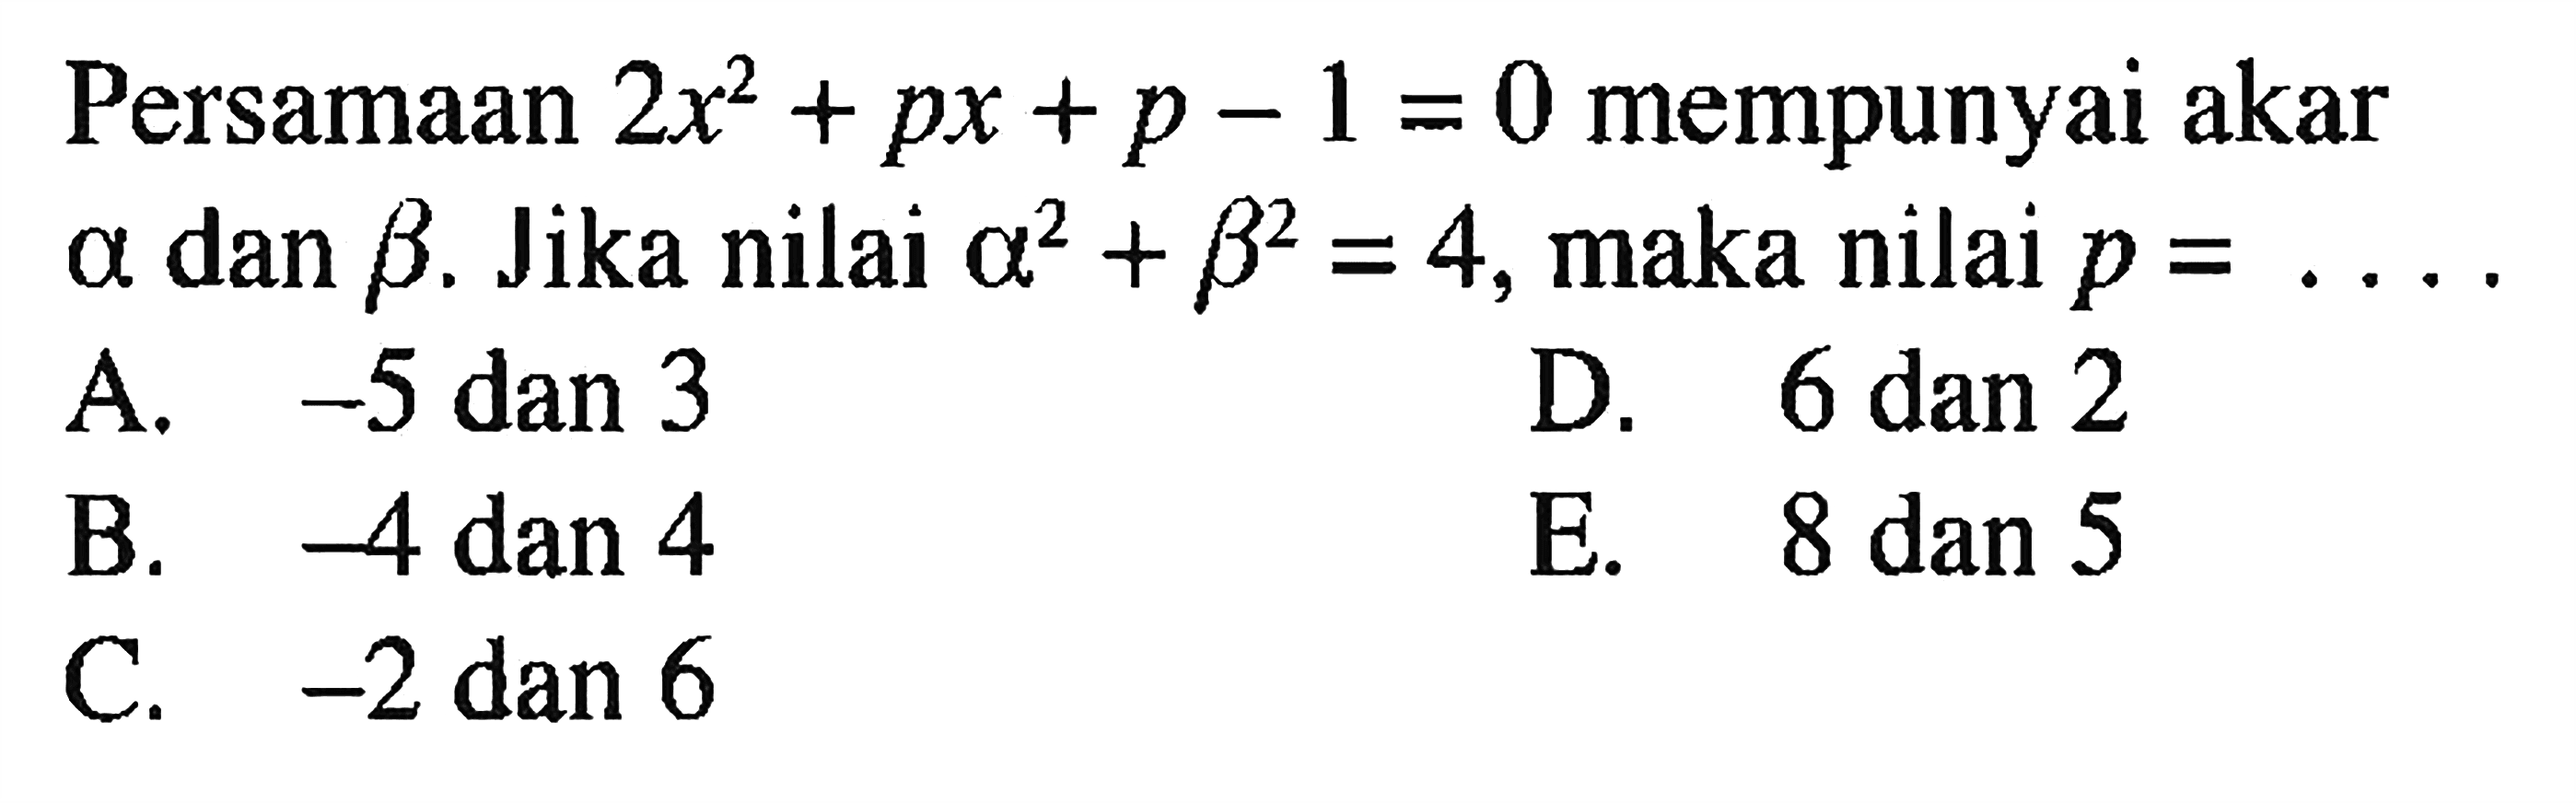 Persamaan  2x^2+px+p-1=0  mempunyai akar  a  dan  b . Jika nilai  a^2+b^2=4 , maka nilai  p=... 